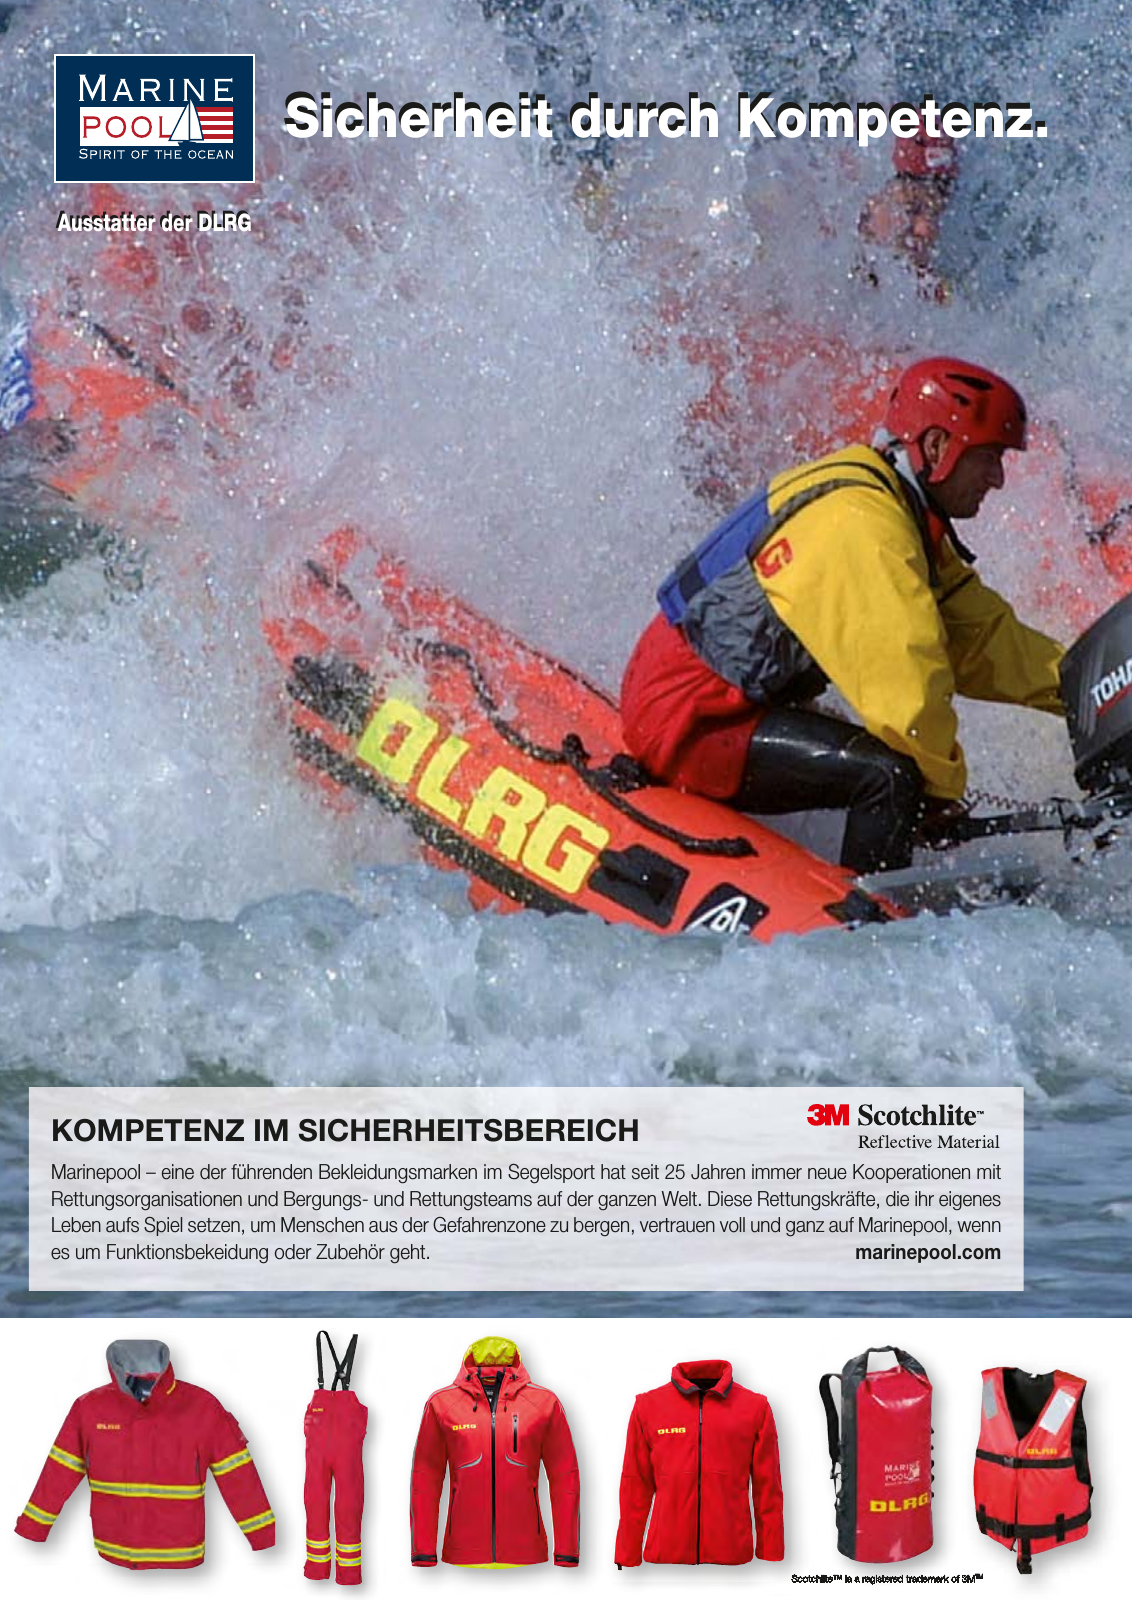 Vorschau Lebensretter 1/2016 - Regionalausgabe Niedersachsen Seite 2